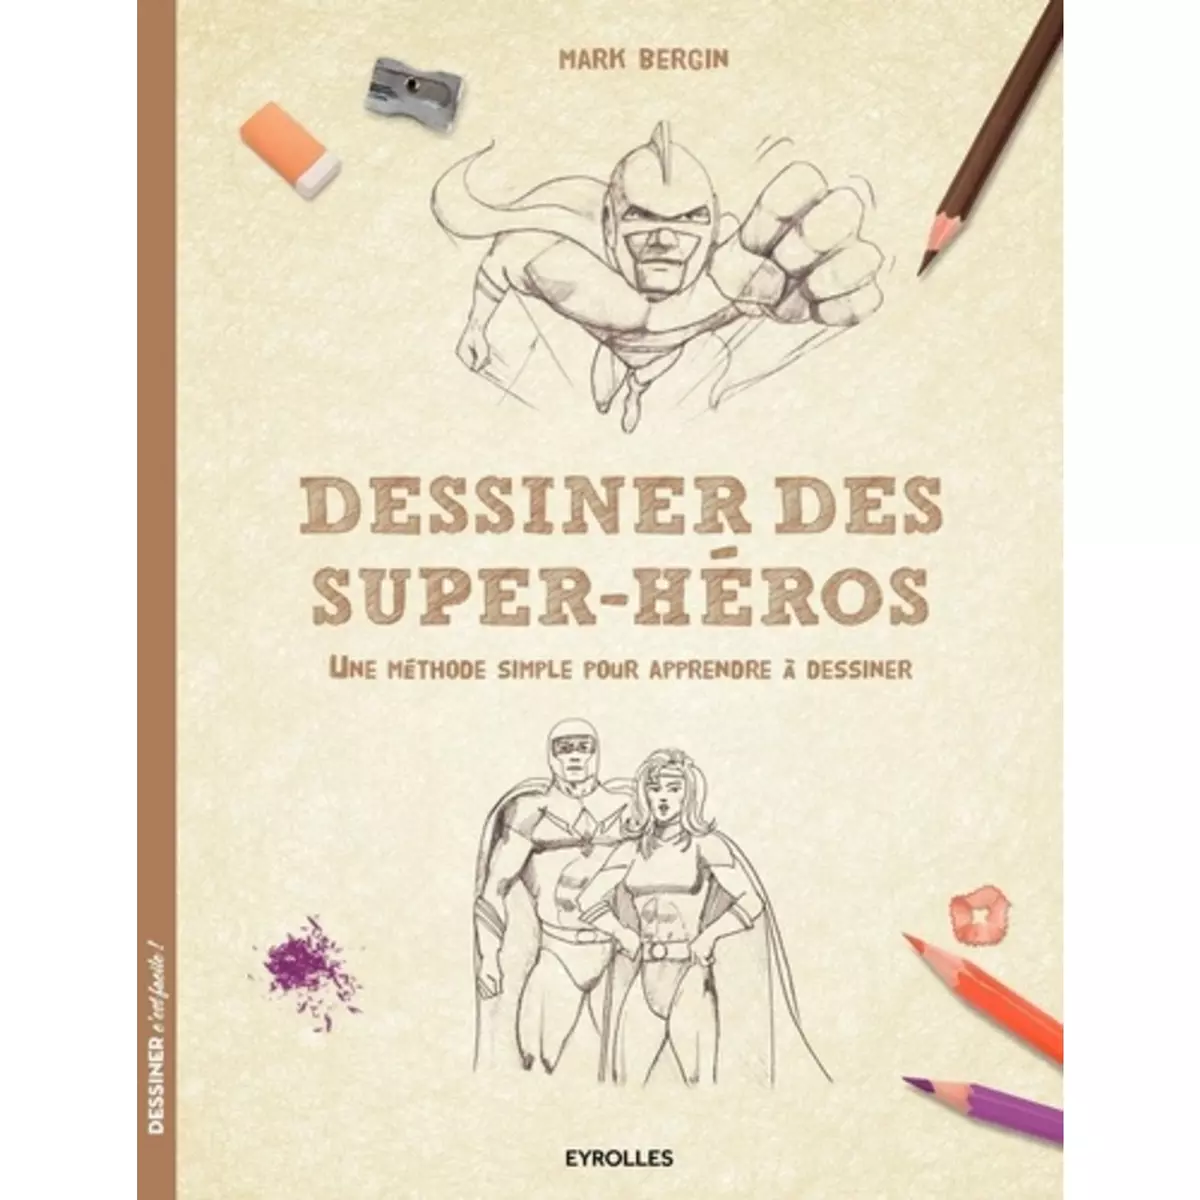  DESSINER DES SUPER-HEROS. UNE METHODE SIMPLE POUR APPRENDRE A DESSINER, Bergin Mark